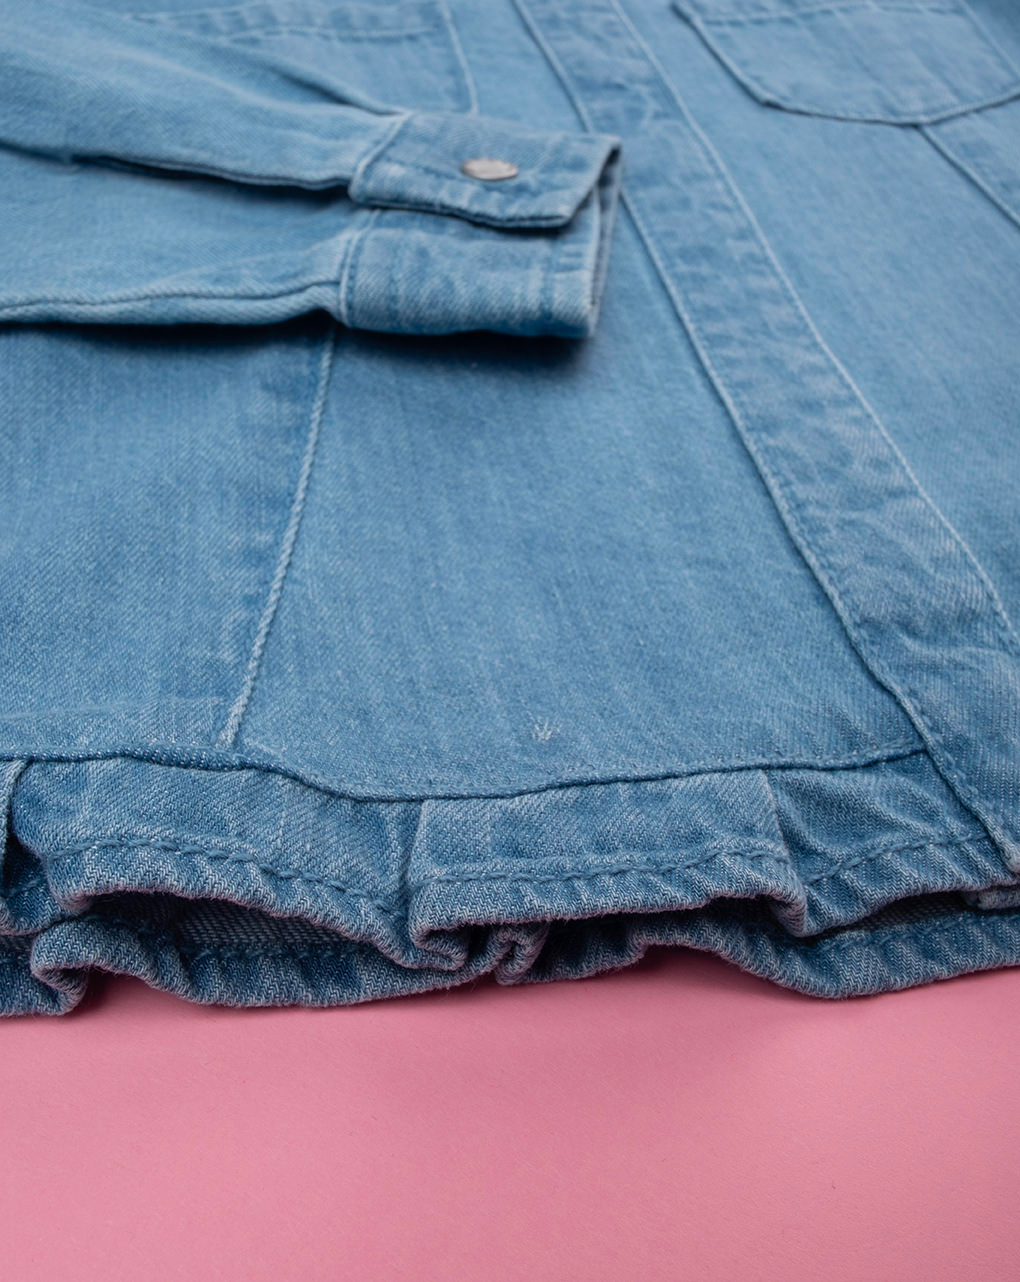 παιδικό τζιν πουκάμισο μπλε για κορίτσι - Prénatal